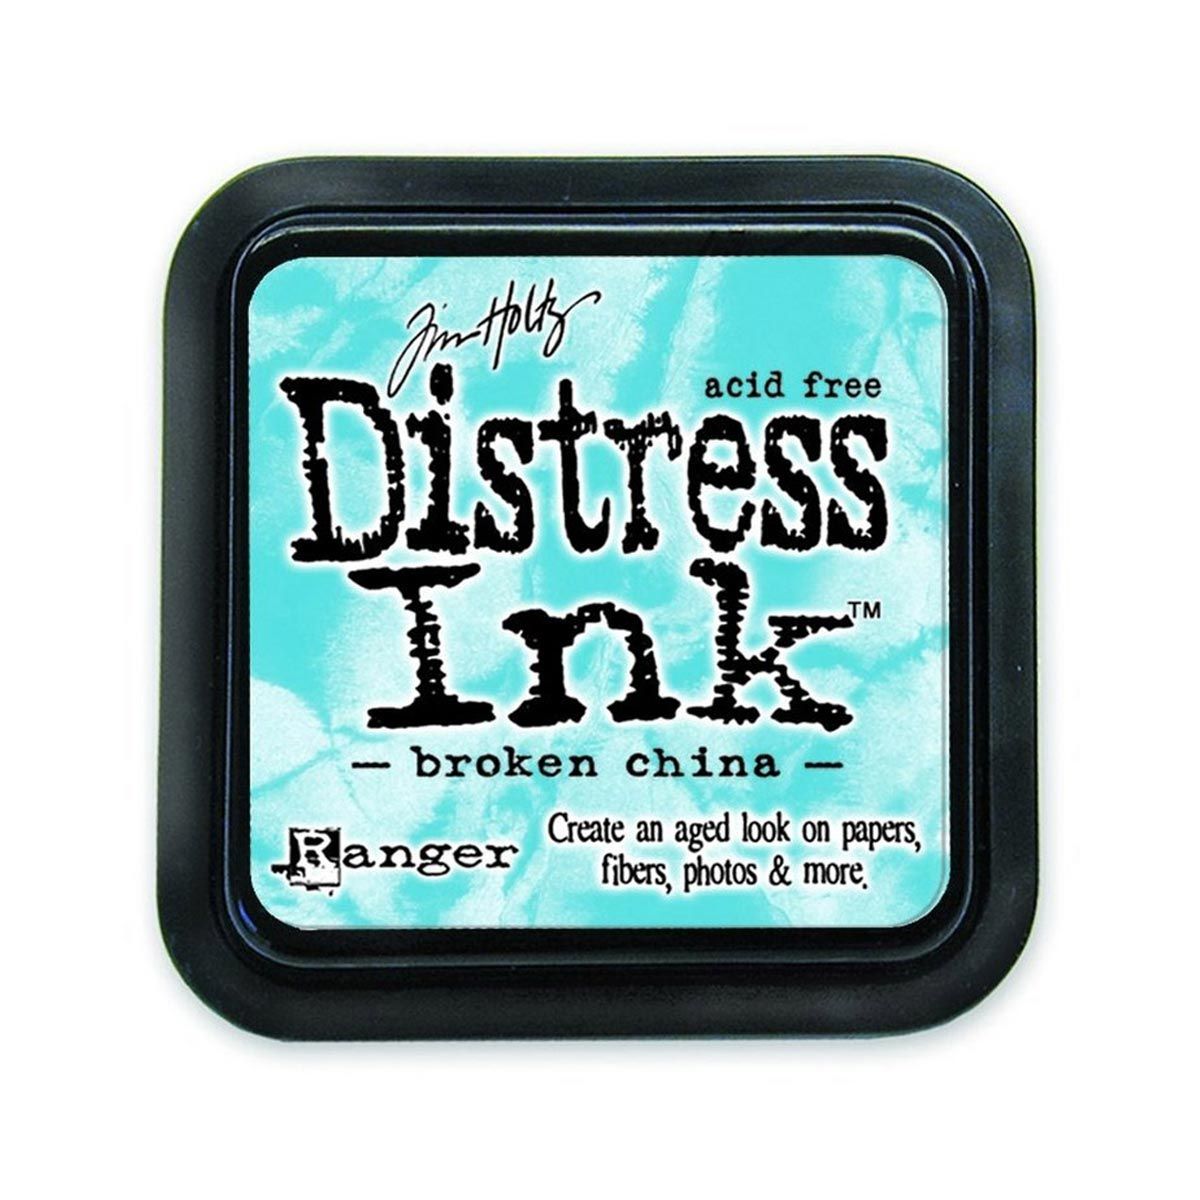 Tim Holtz Mini Distress Ink Pad Broken China 1x1 inch